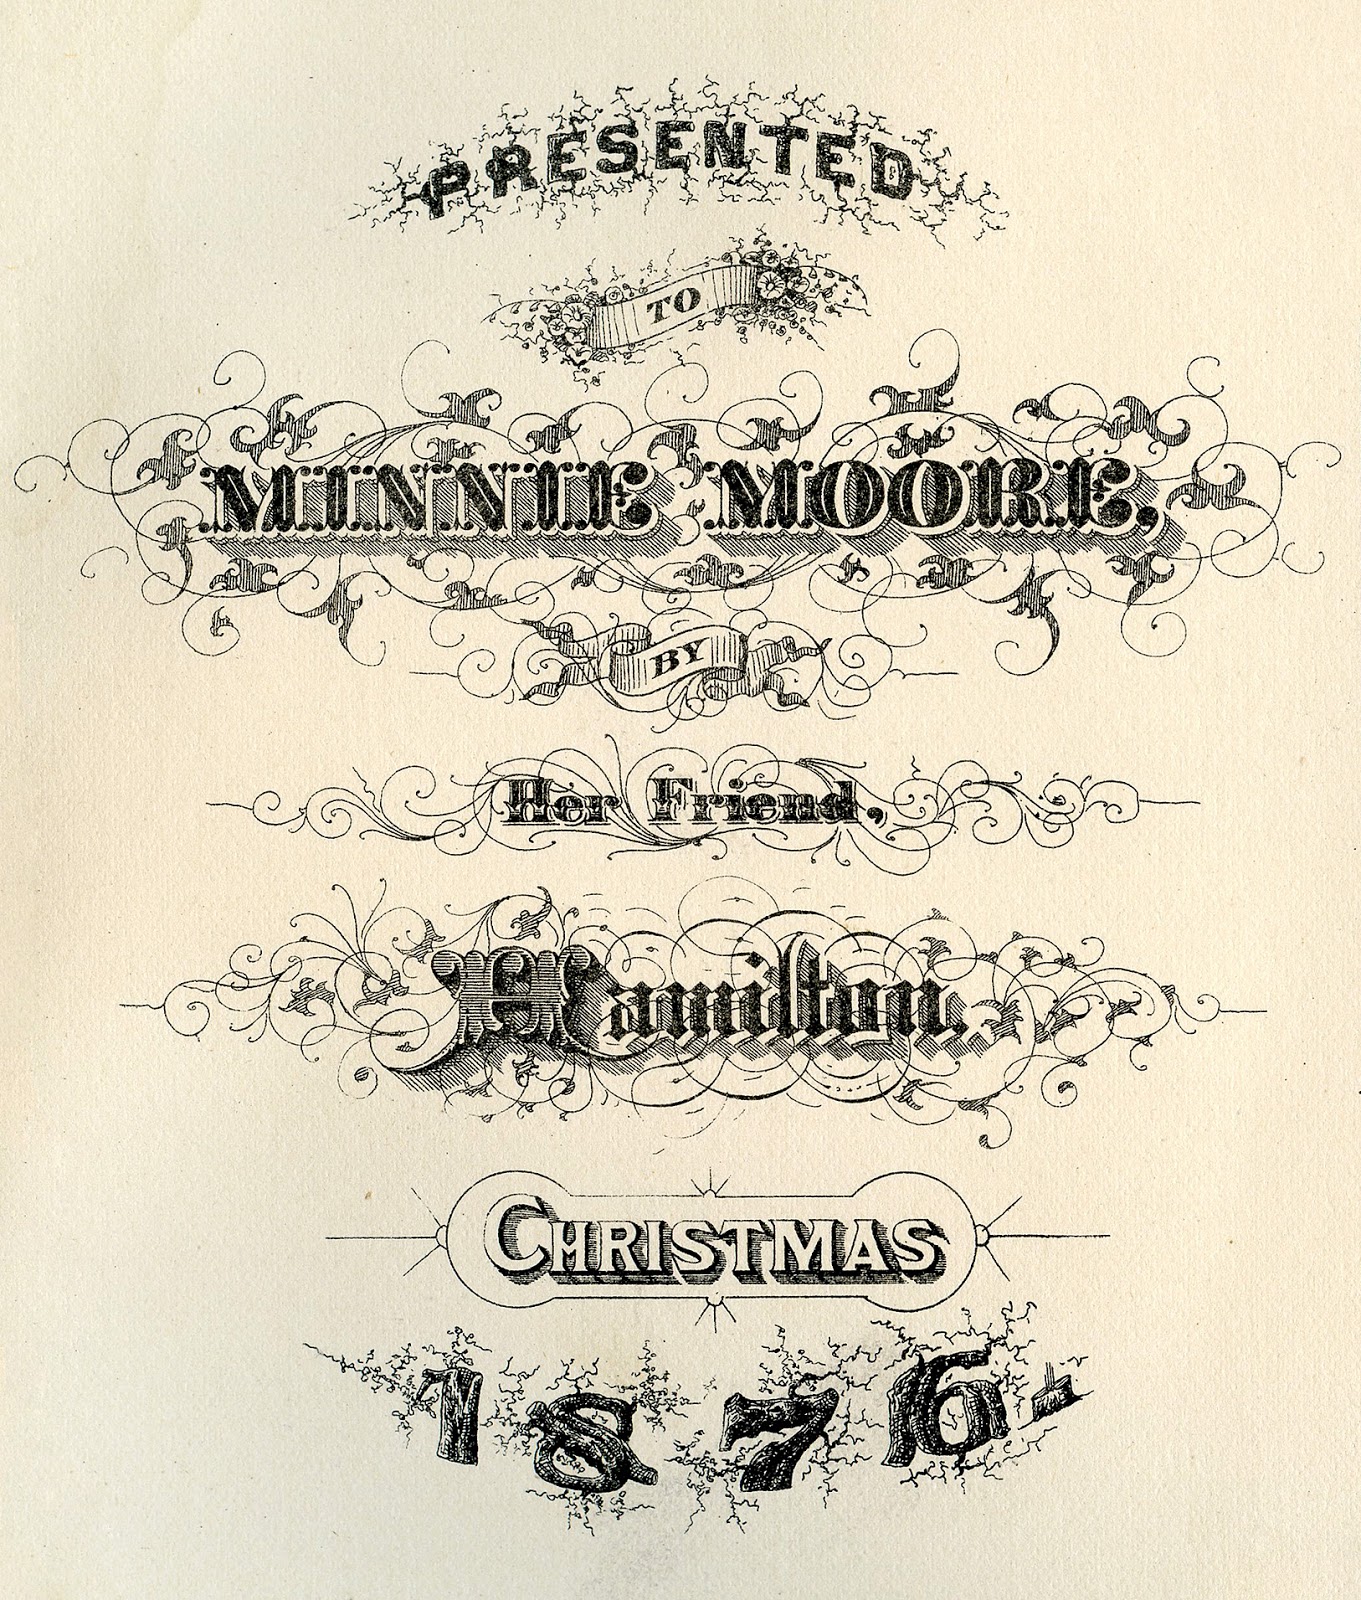 Antique Ephemera - Christmas 1876 Typography - The Graphics Fairy